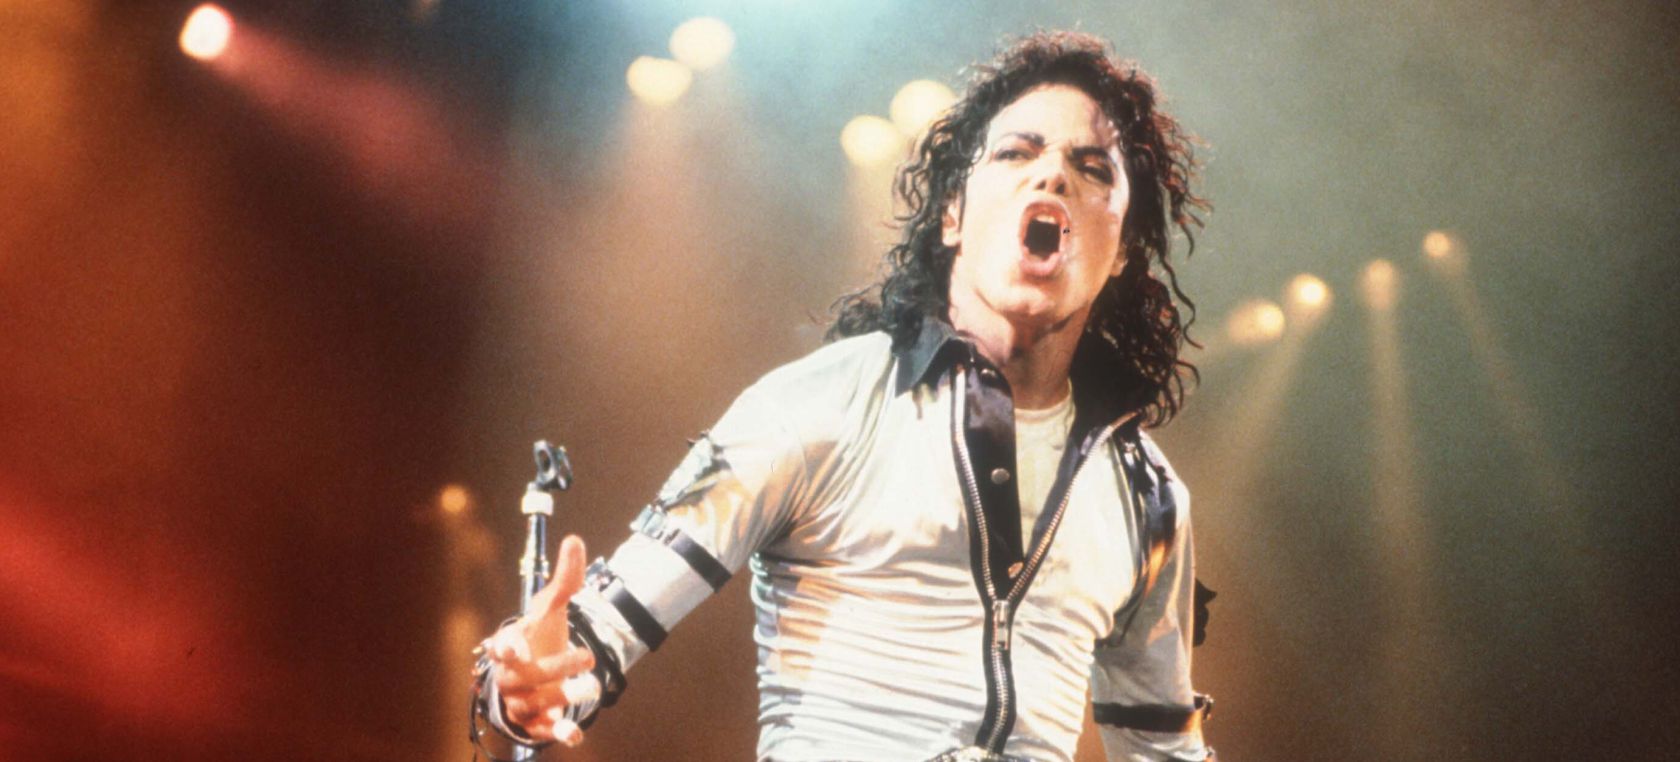 Así se creó ‘Thriller’, el videoclip de Michael Jackson que cambió la historia del pop